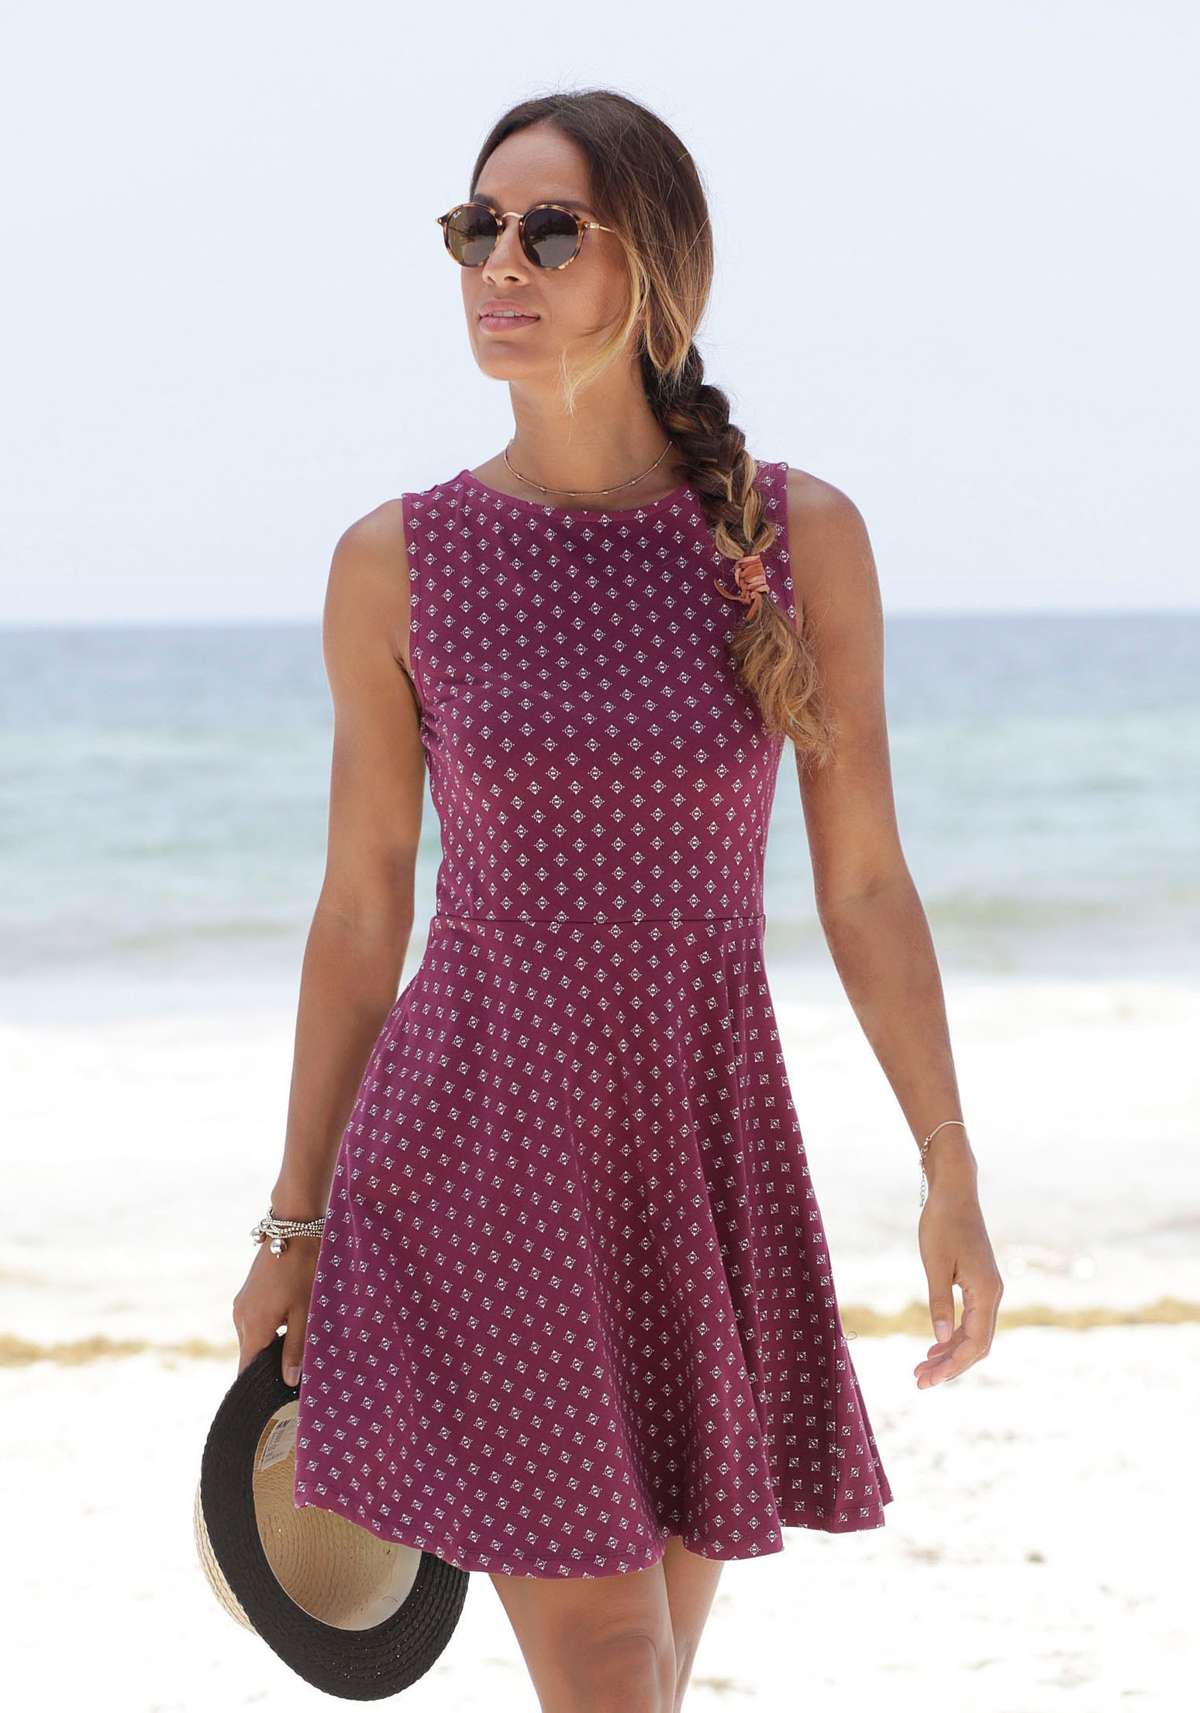 Пляжное платье с принтом по всей поверхности, летнее платье из эластичного хлопка.